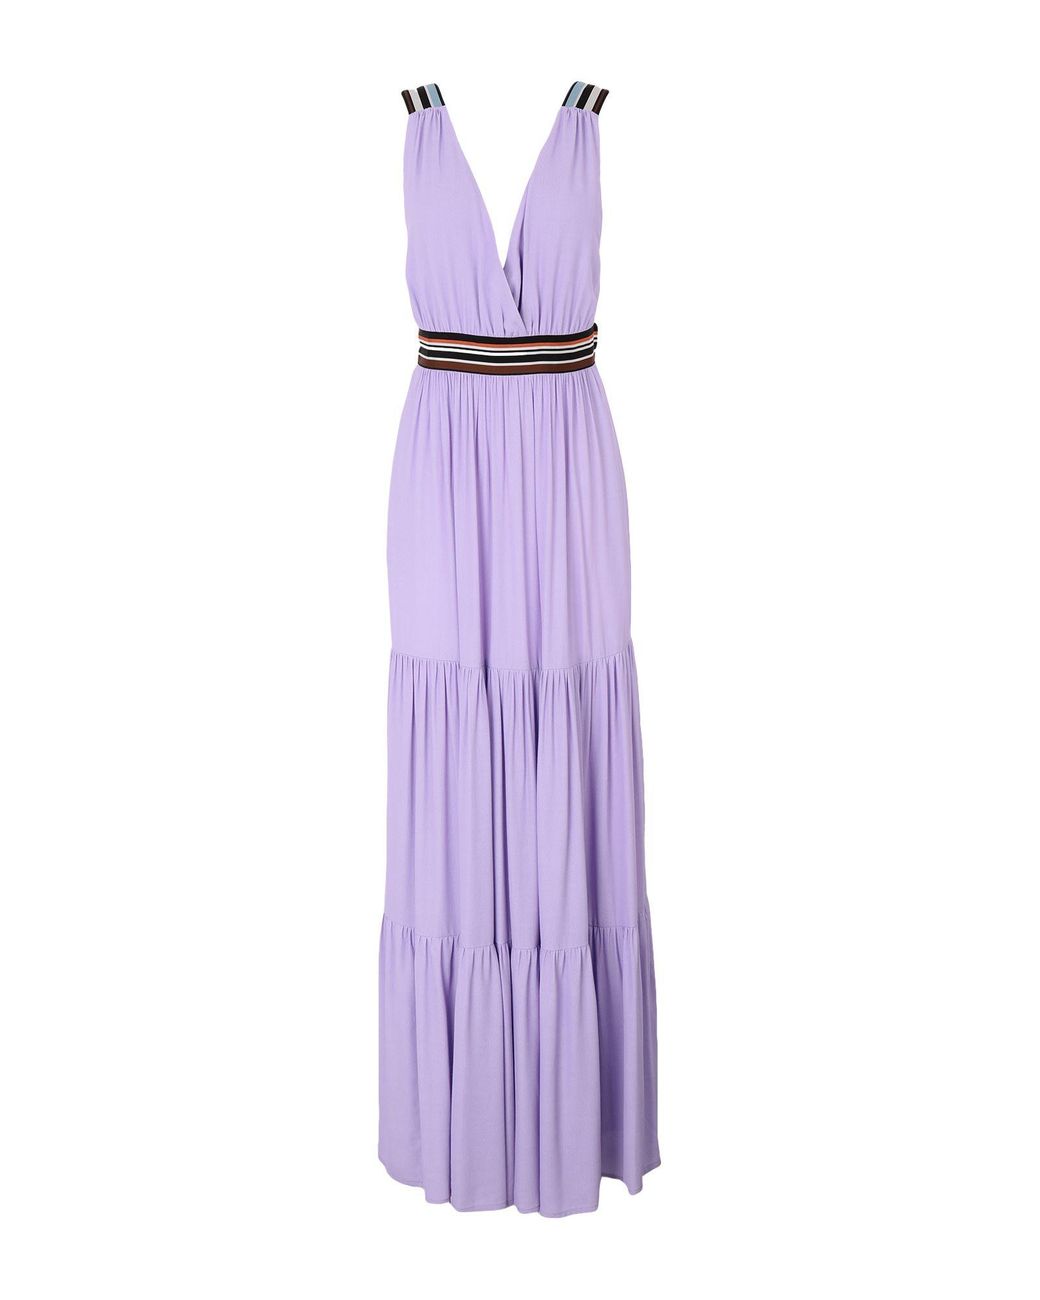 Suoli Synthetic Long Dress in Lilac (Purple) - Lyst